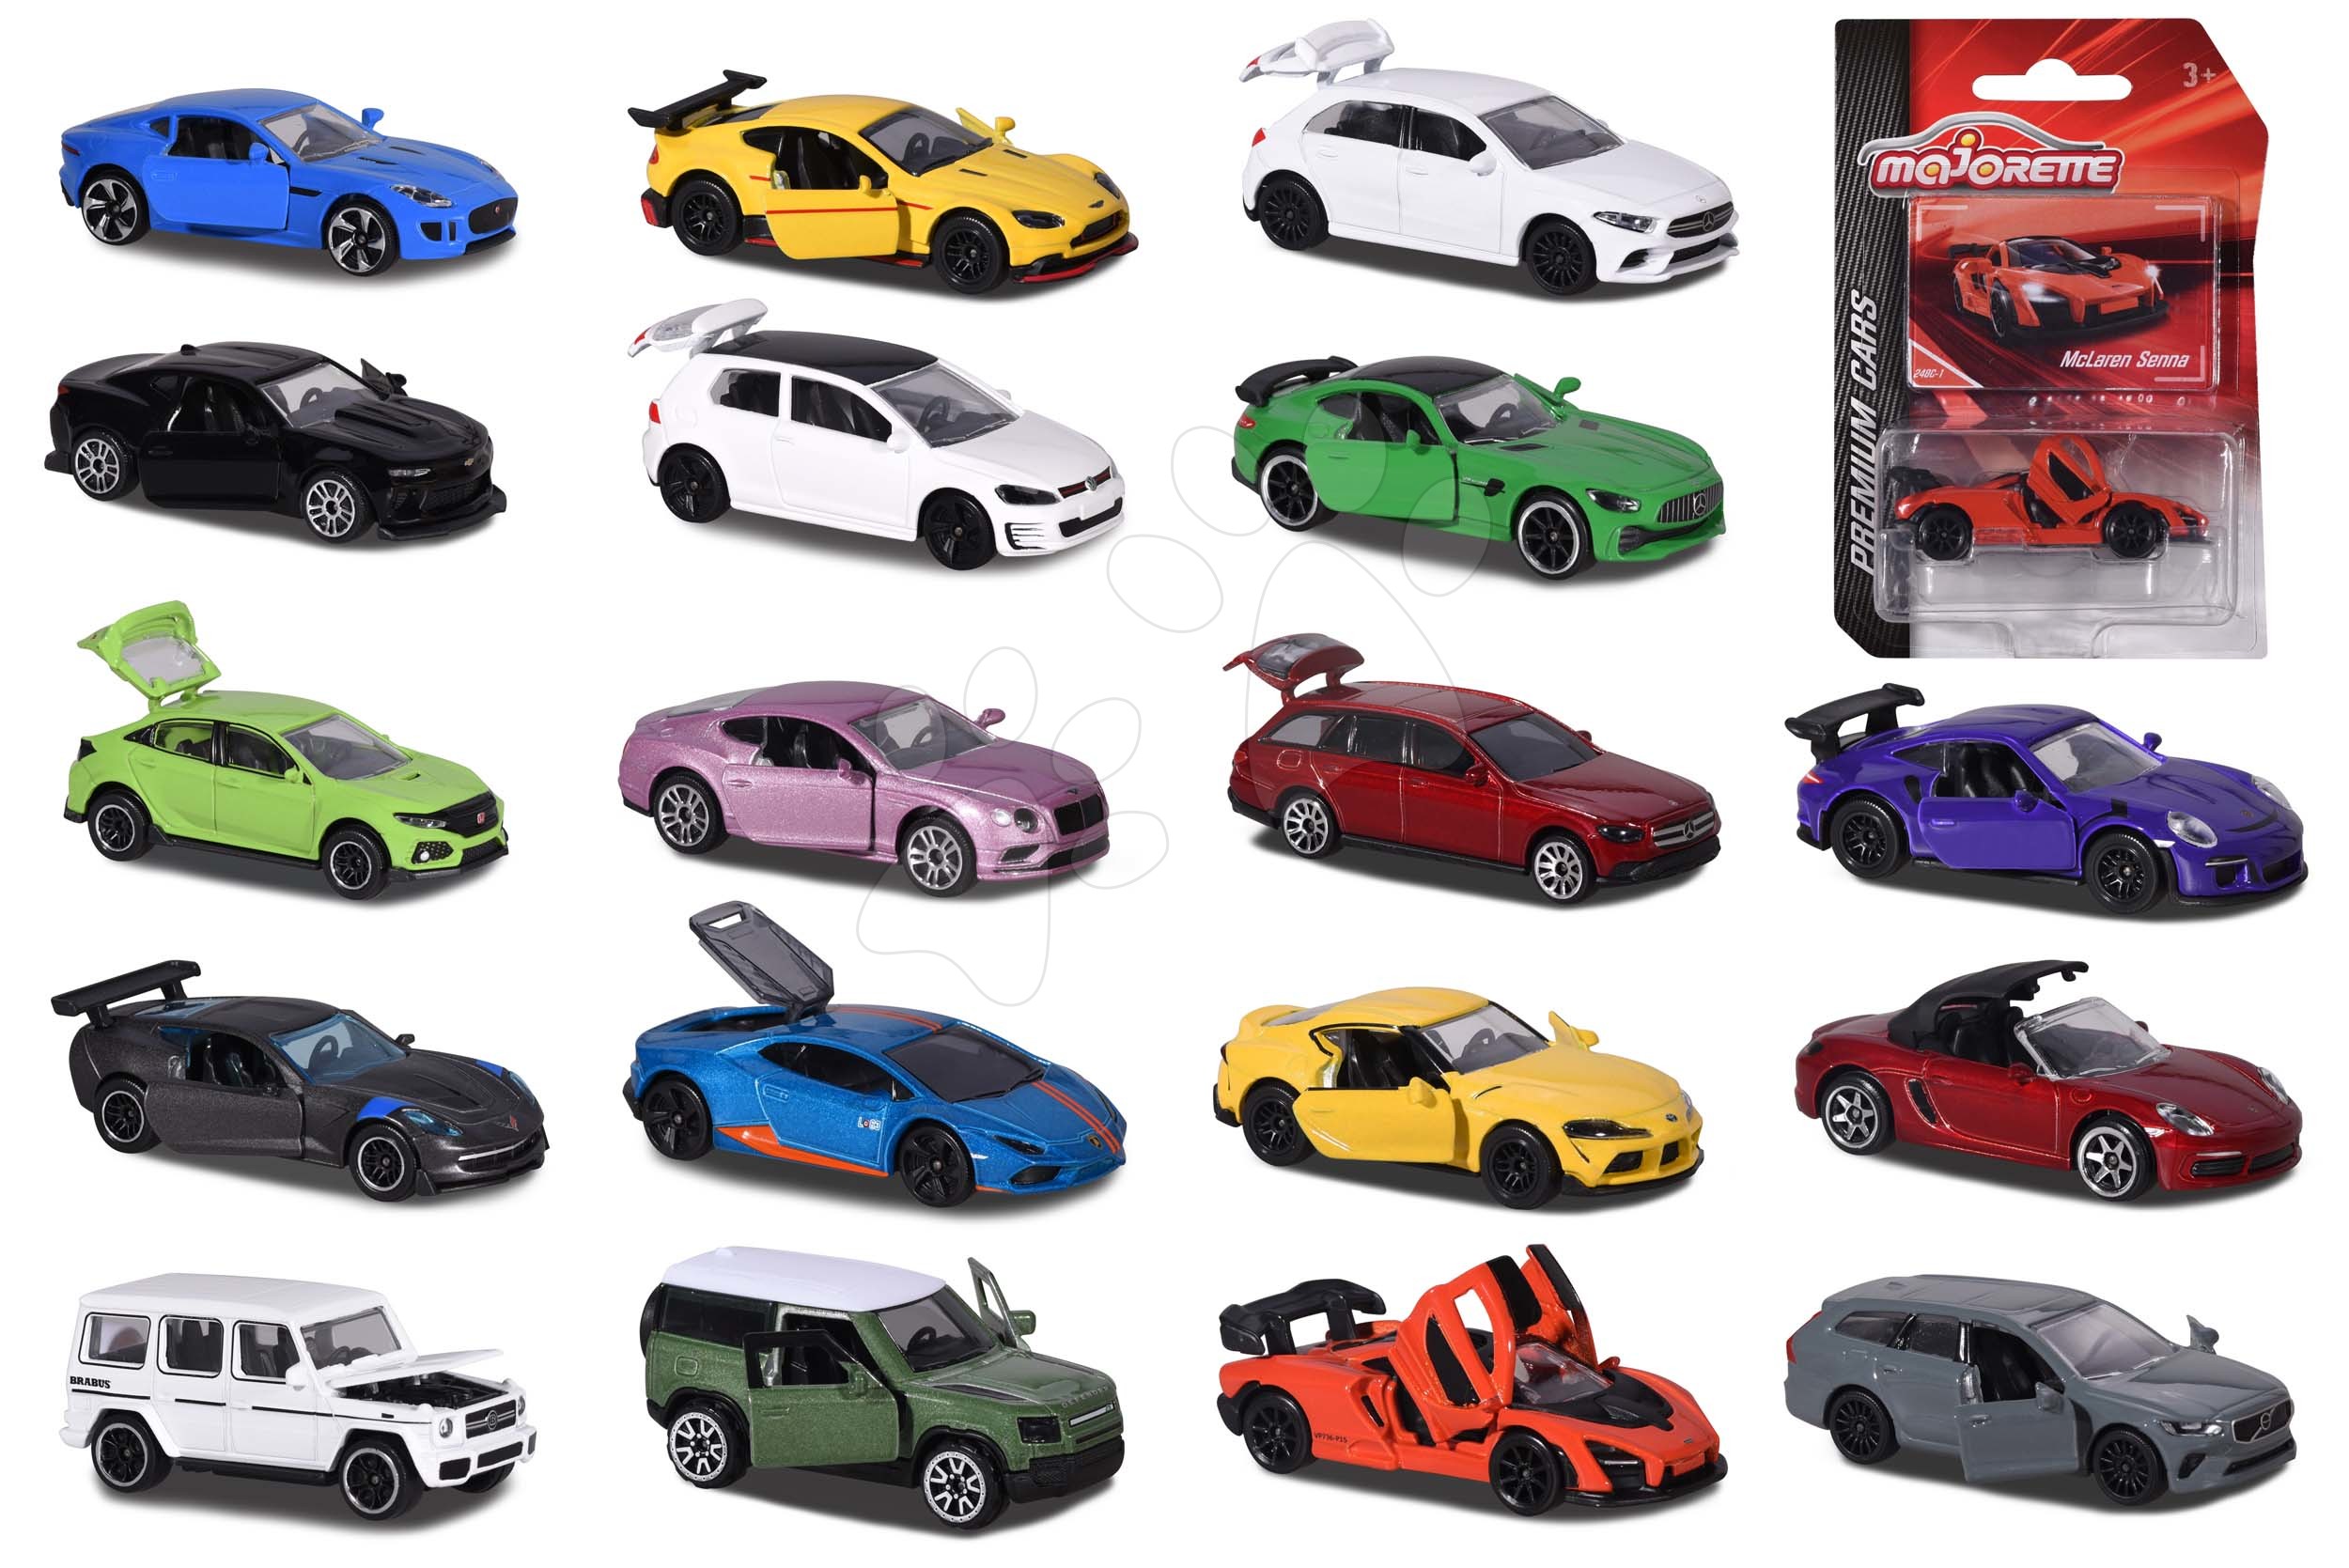 Prémium kisautók Premium Cars Majorette fémből felfüggesztéssel nyithatóak és gyűjtőkártyával 18 fajta